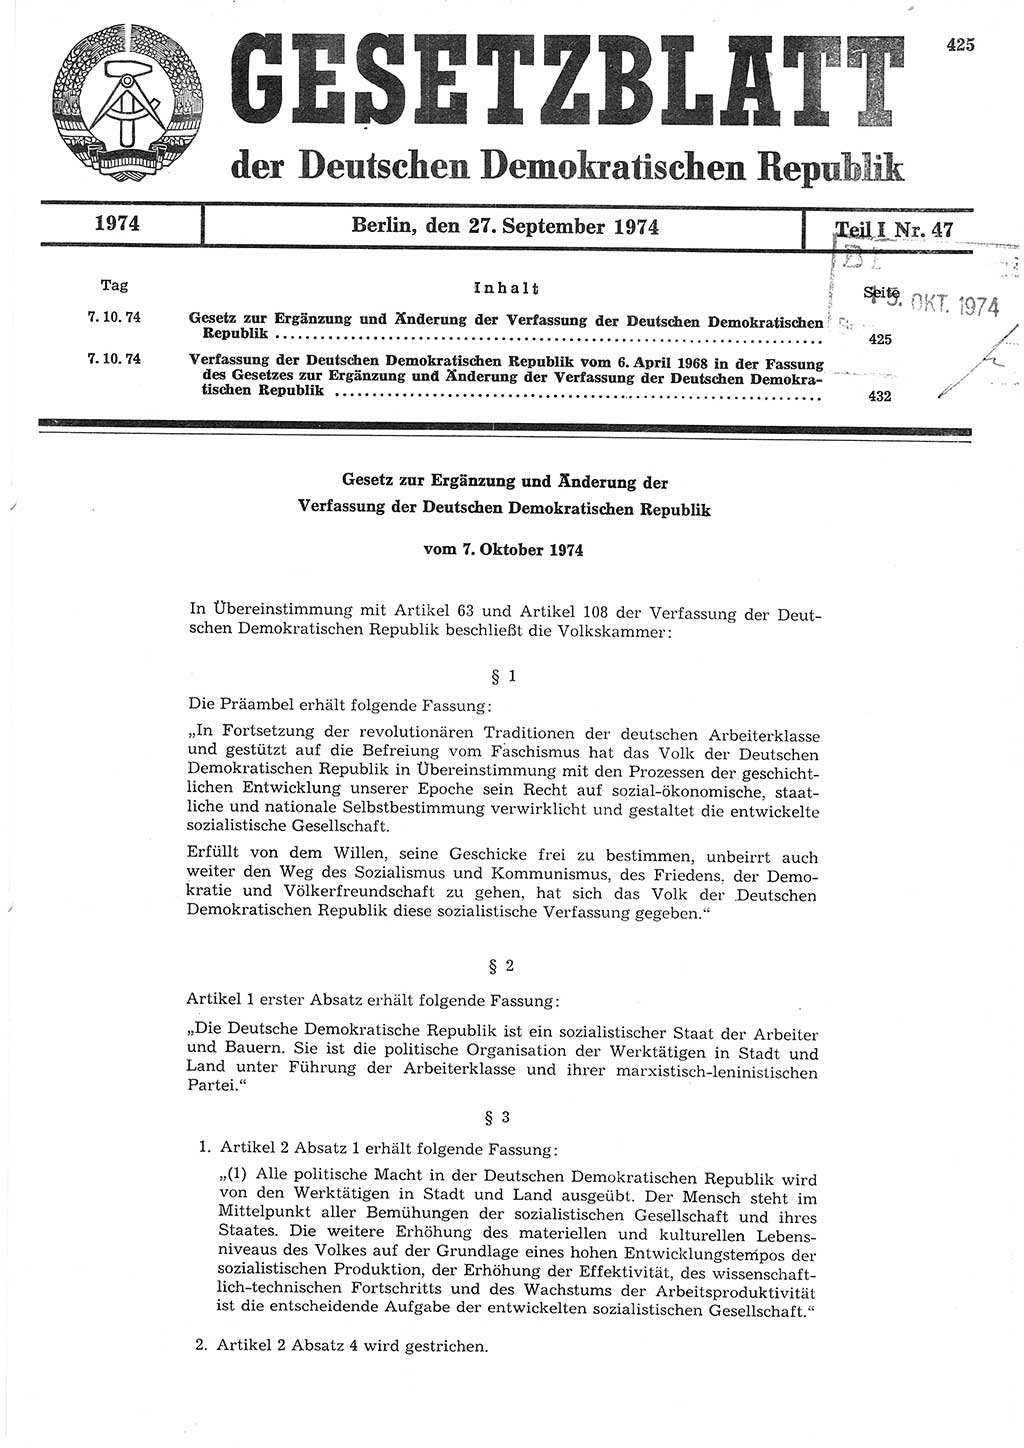 Gesetzblatt (GBl.) der Deutschen Demokratischen Republik (DDR) Teil Ⅰ 1974, Seite 425 (GBl. DDR Ⅰ 1974, S. 425)